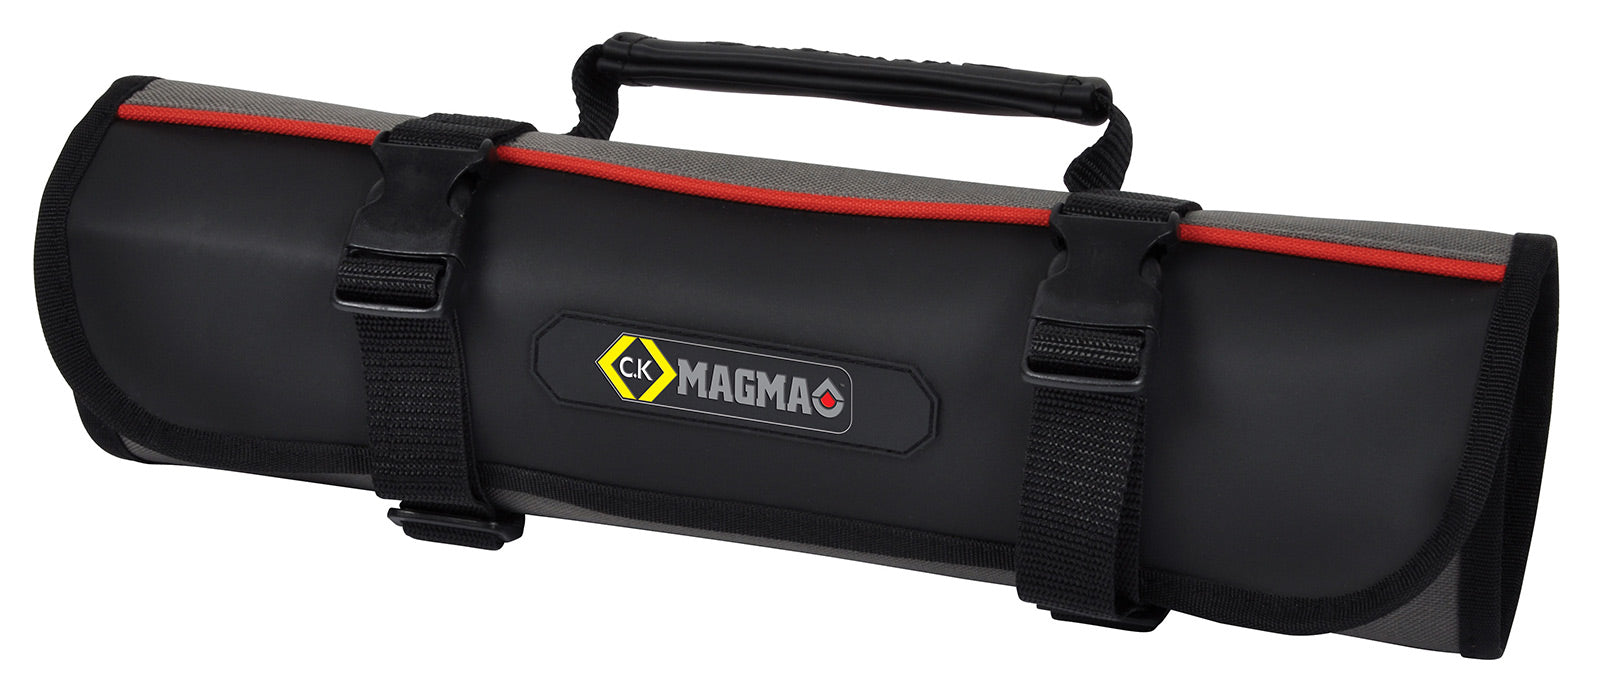 C.K Magma MA2719 chisel roll tool bag